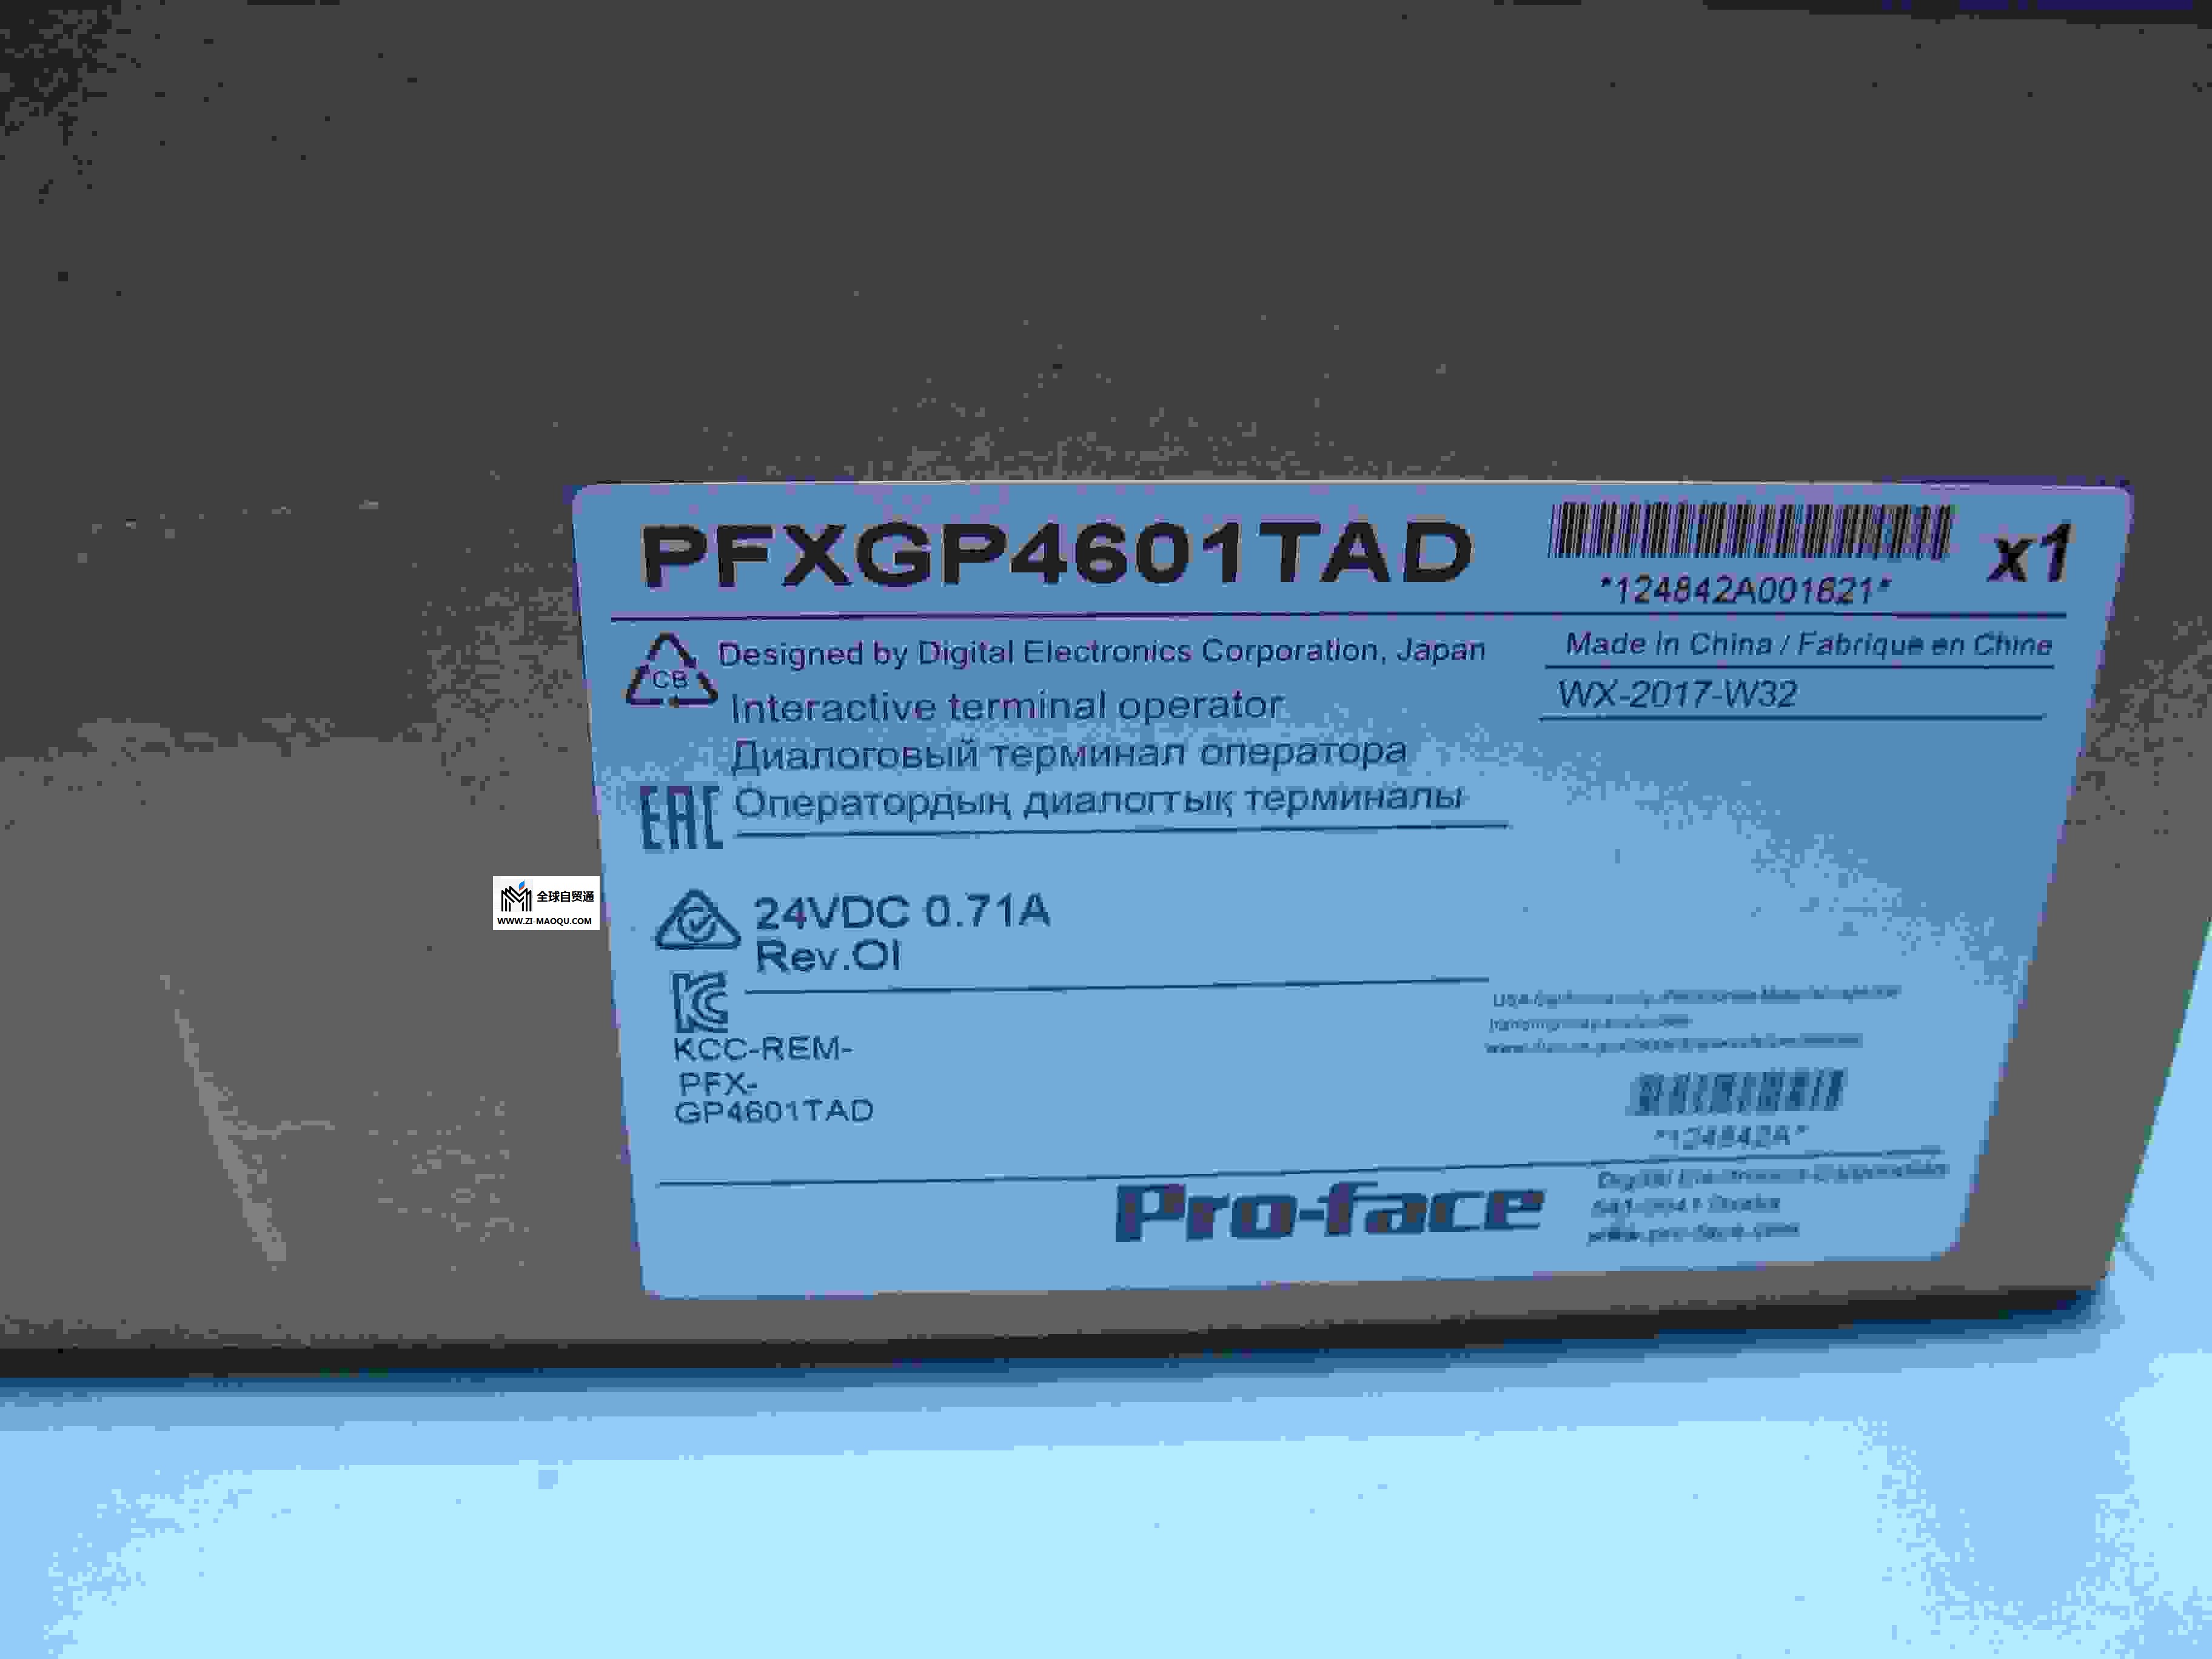 普洛菲斯触摸屏PFXGP4501TADW代理商